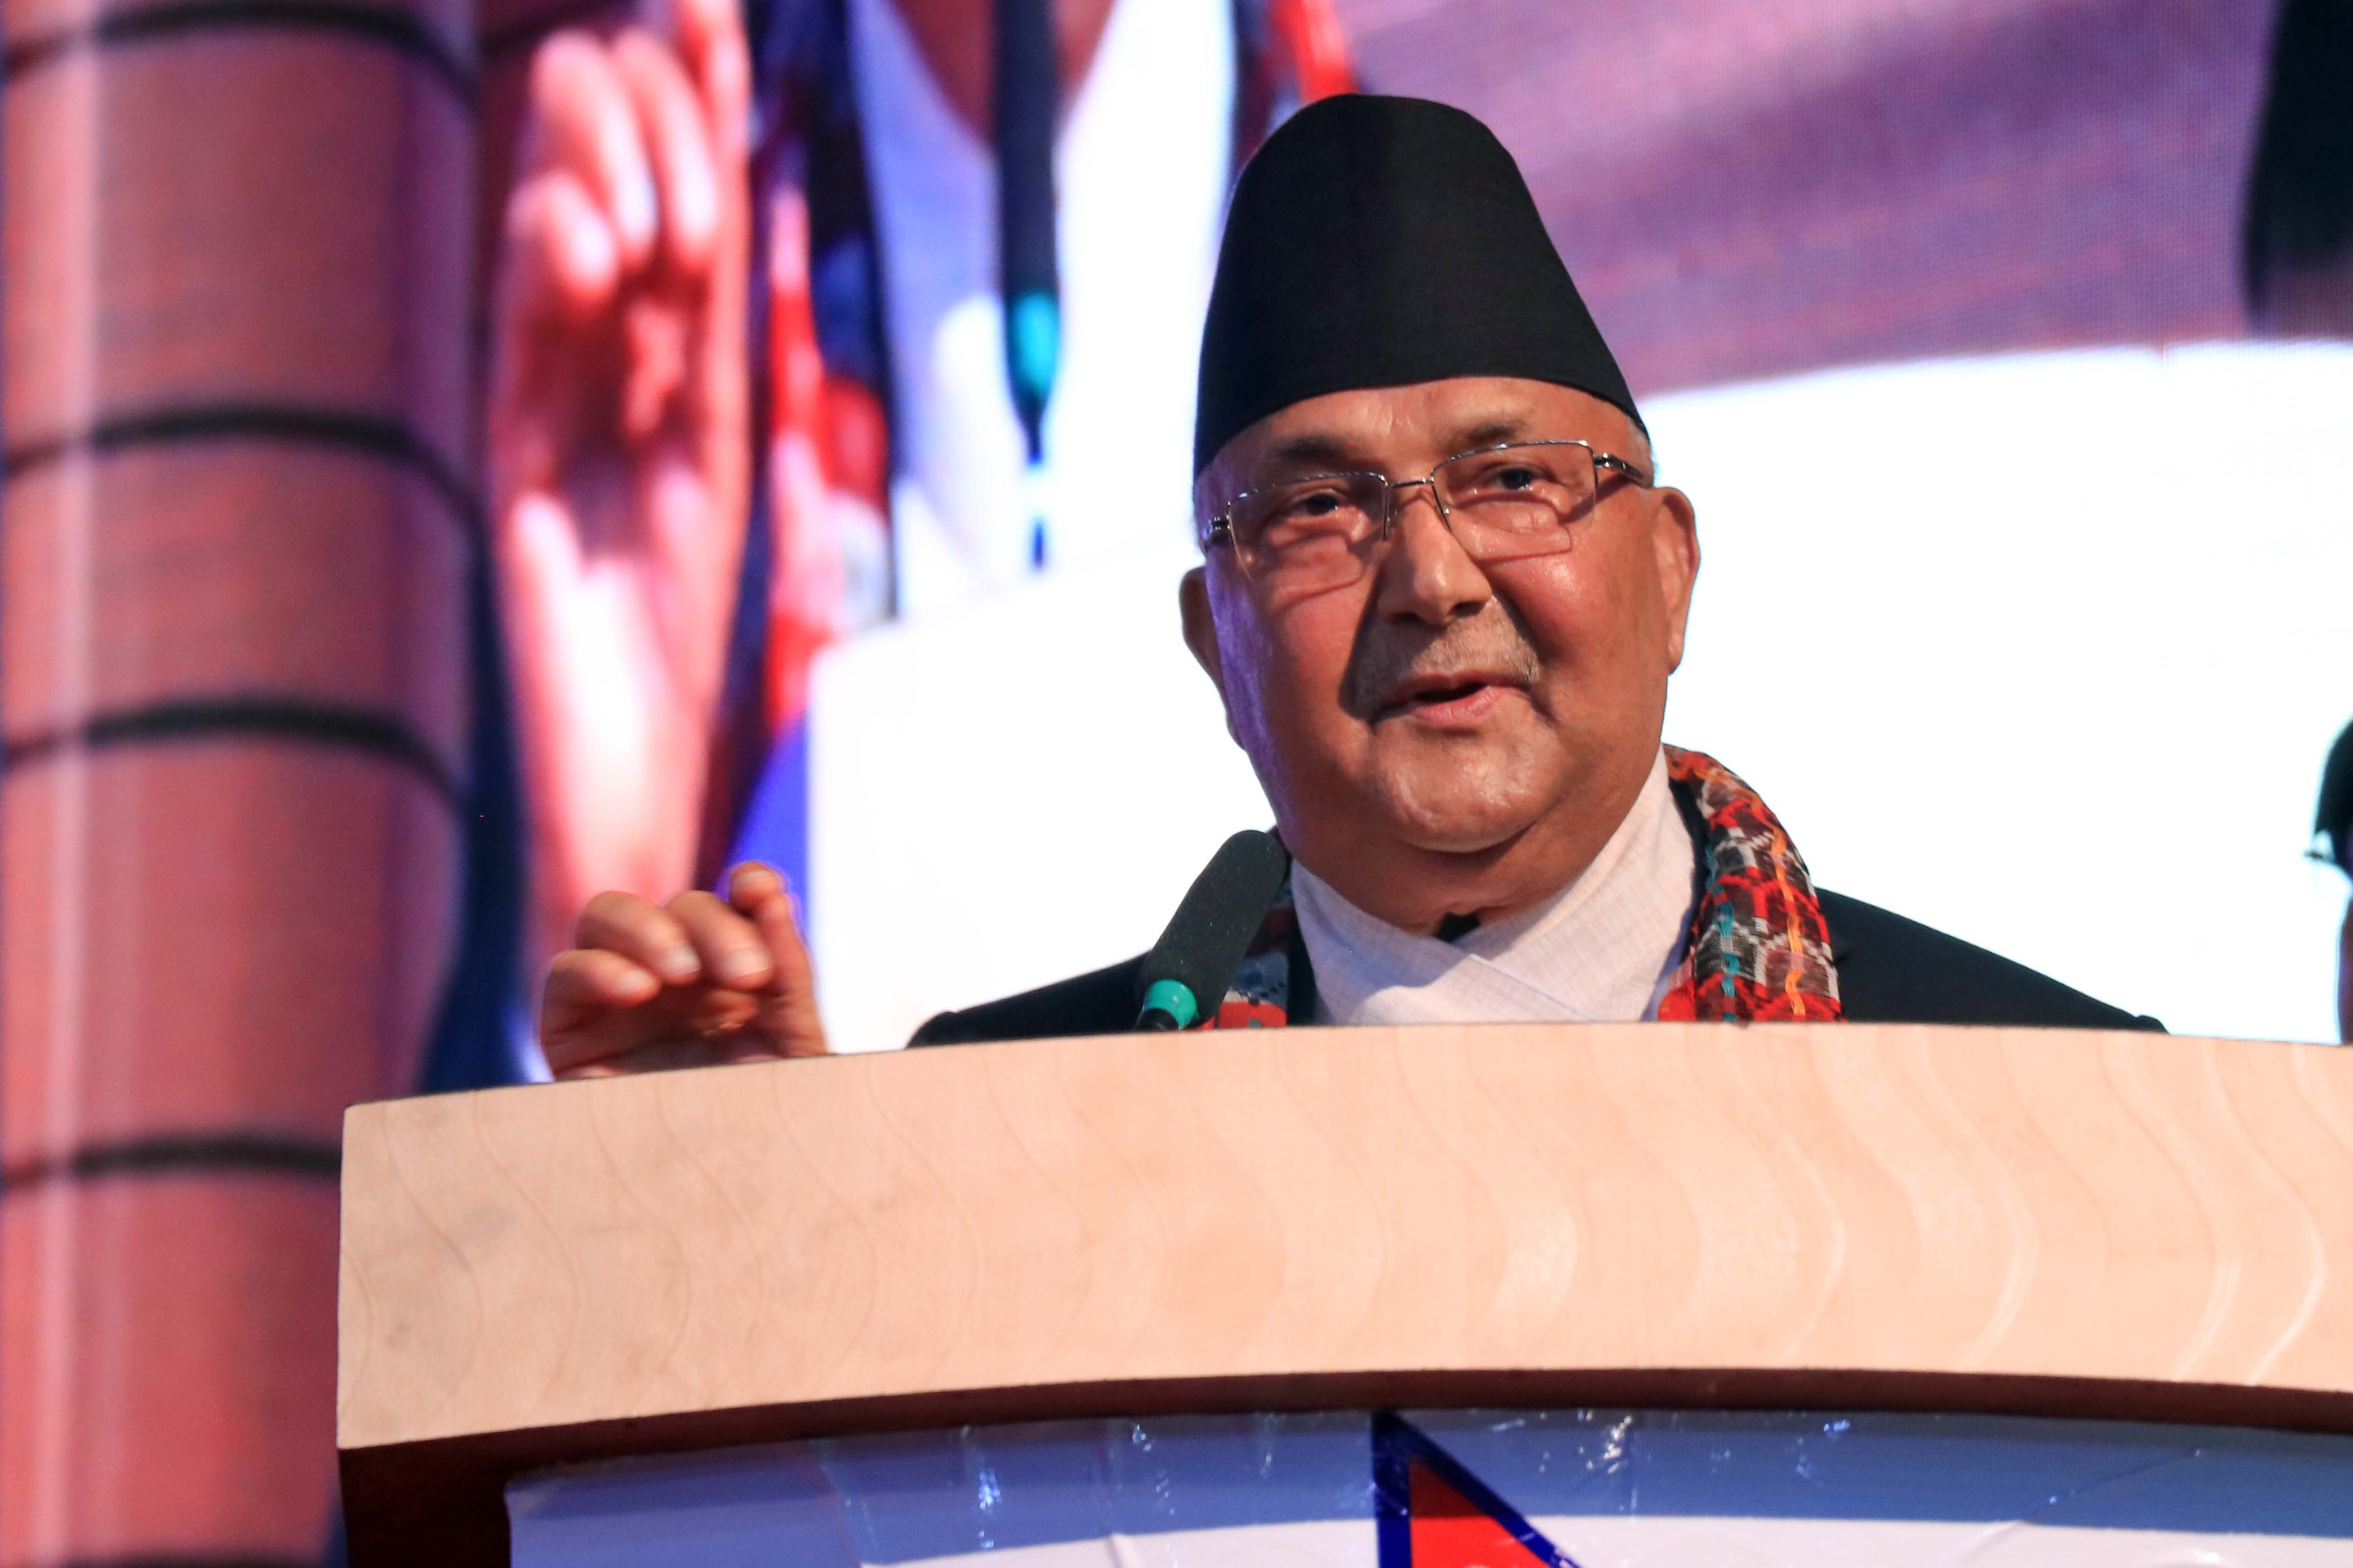 सरकारले विकसित र आधुनिक नेपाल निर्माण गर्न चाहेको छ : प्रधानमन्त्री ओली